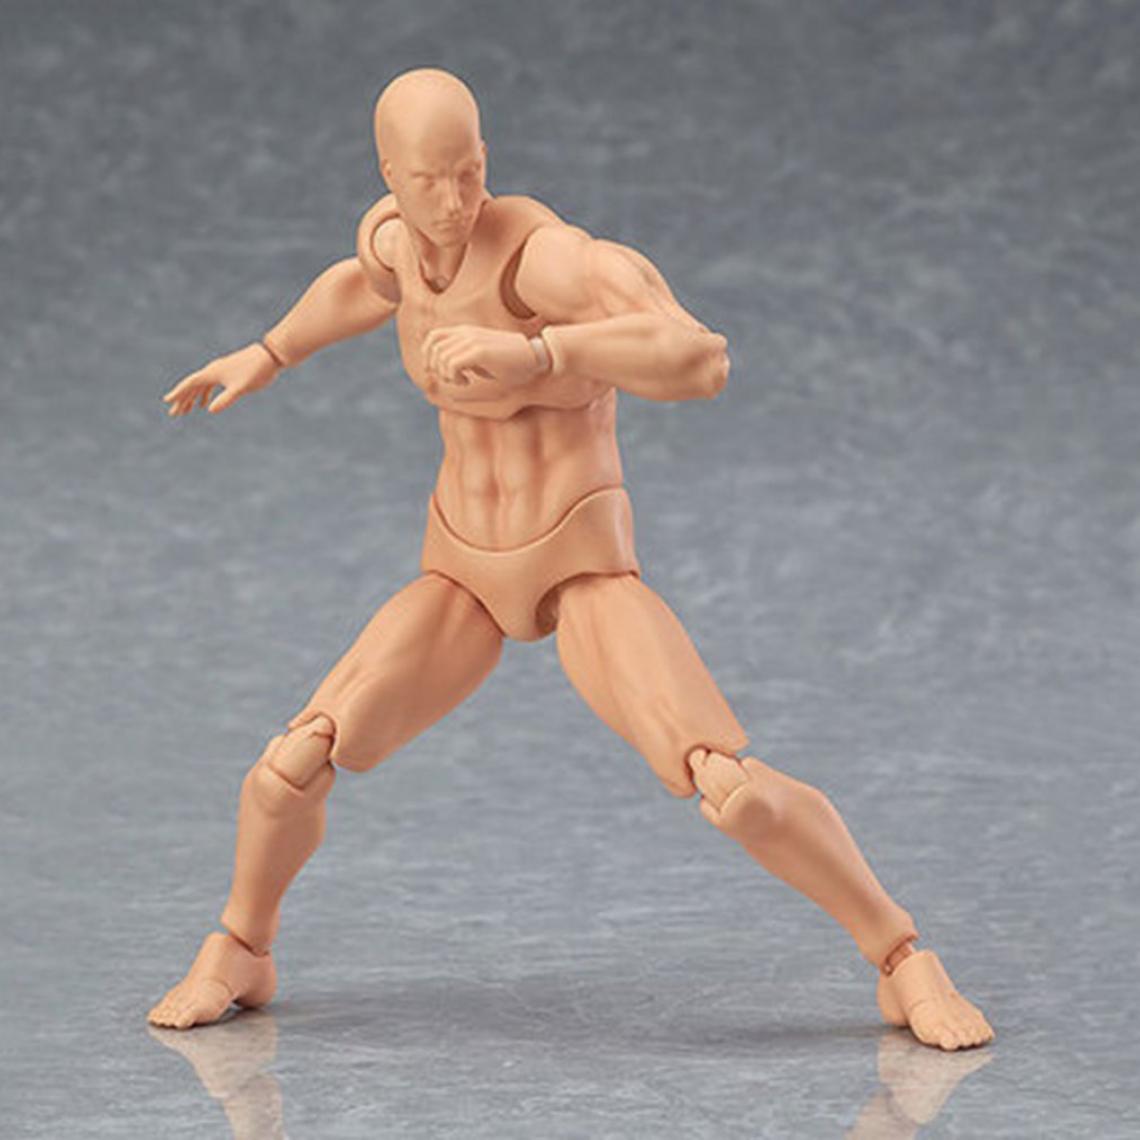 Universal - 13cm Action Figure Jouet Artiste Amovible Homme Femme Articulation Figure PVC Corps Modèle Modèle Art Croquis Dessin Statue | Action Figure(Kaki) - Mangas